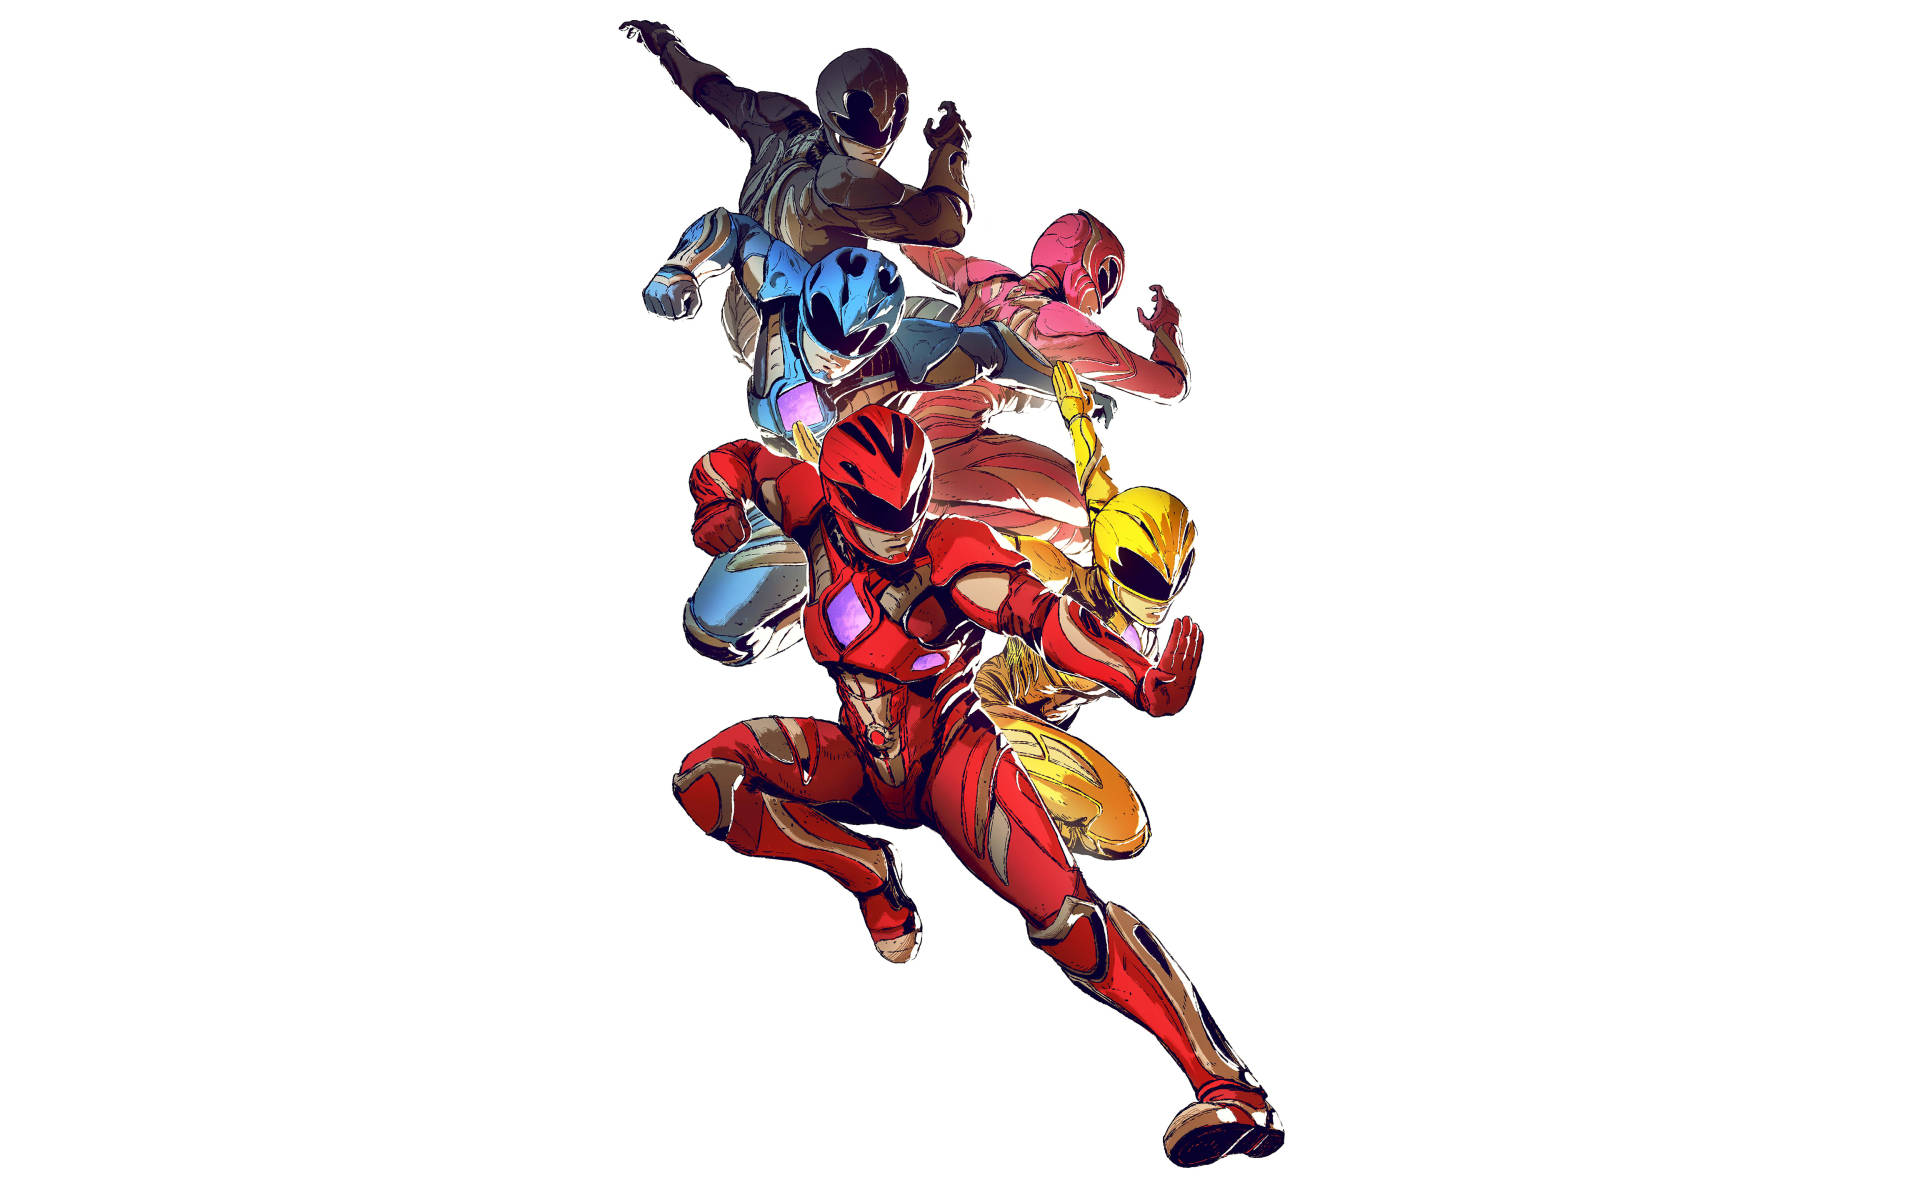 Power Rangers 2017 Art Wallpaper